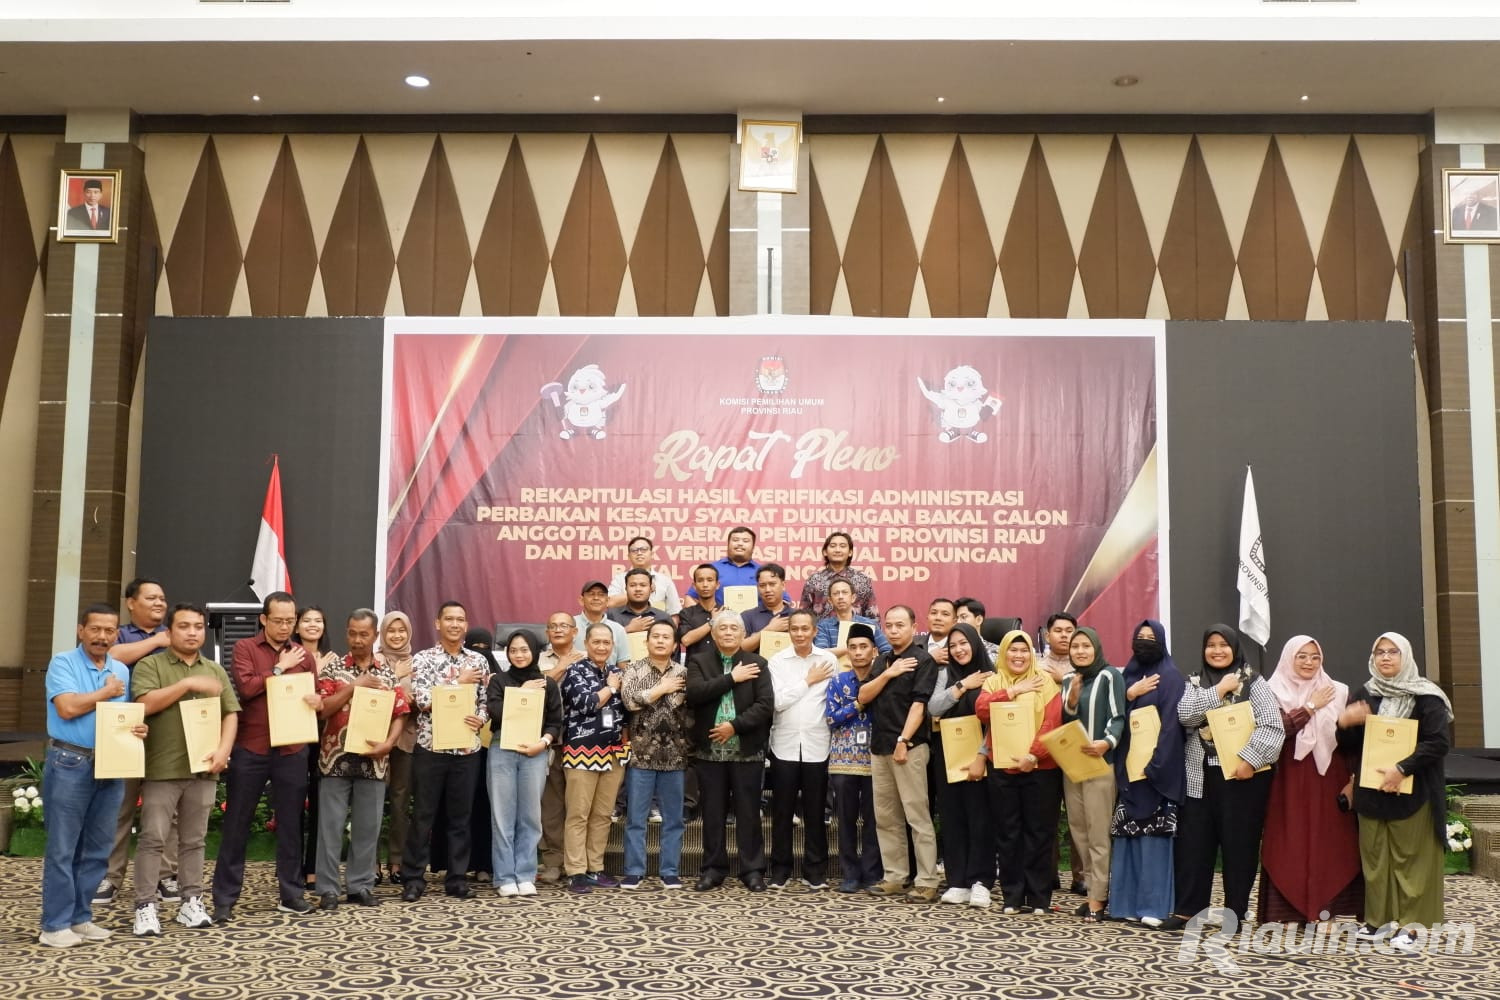 KPU Riau Umumkan 34 Bacalon DPD Penuhi Syarat Dukungan Administrasi